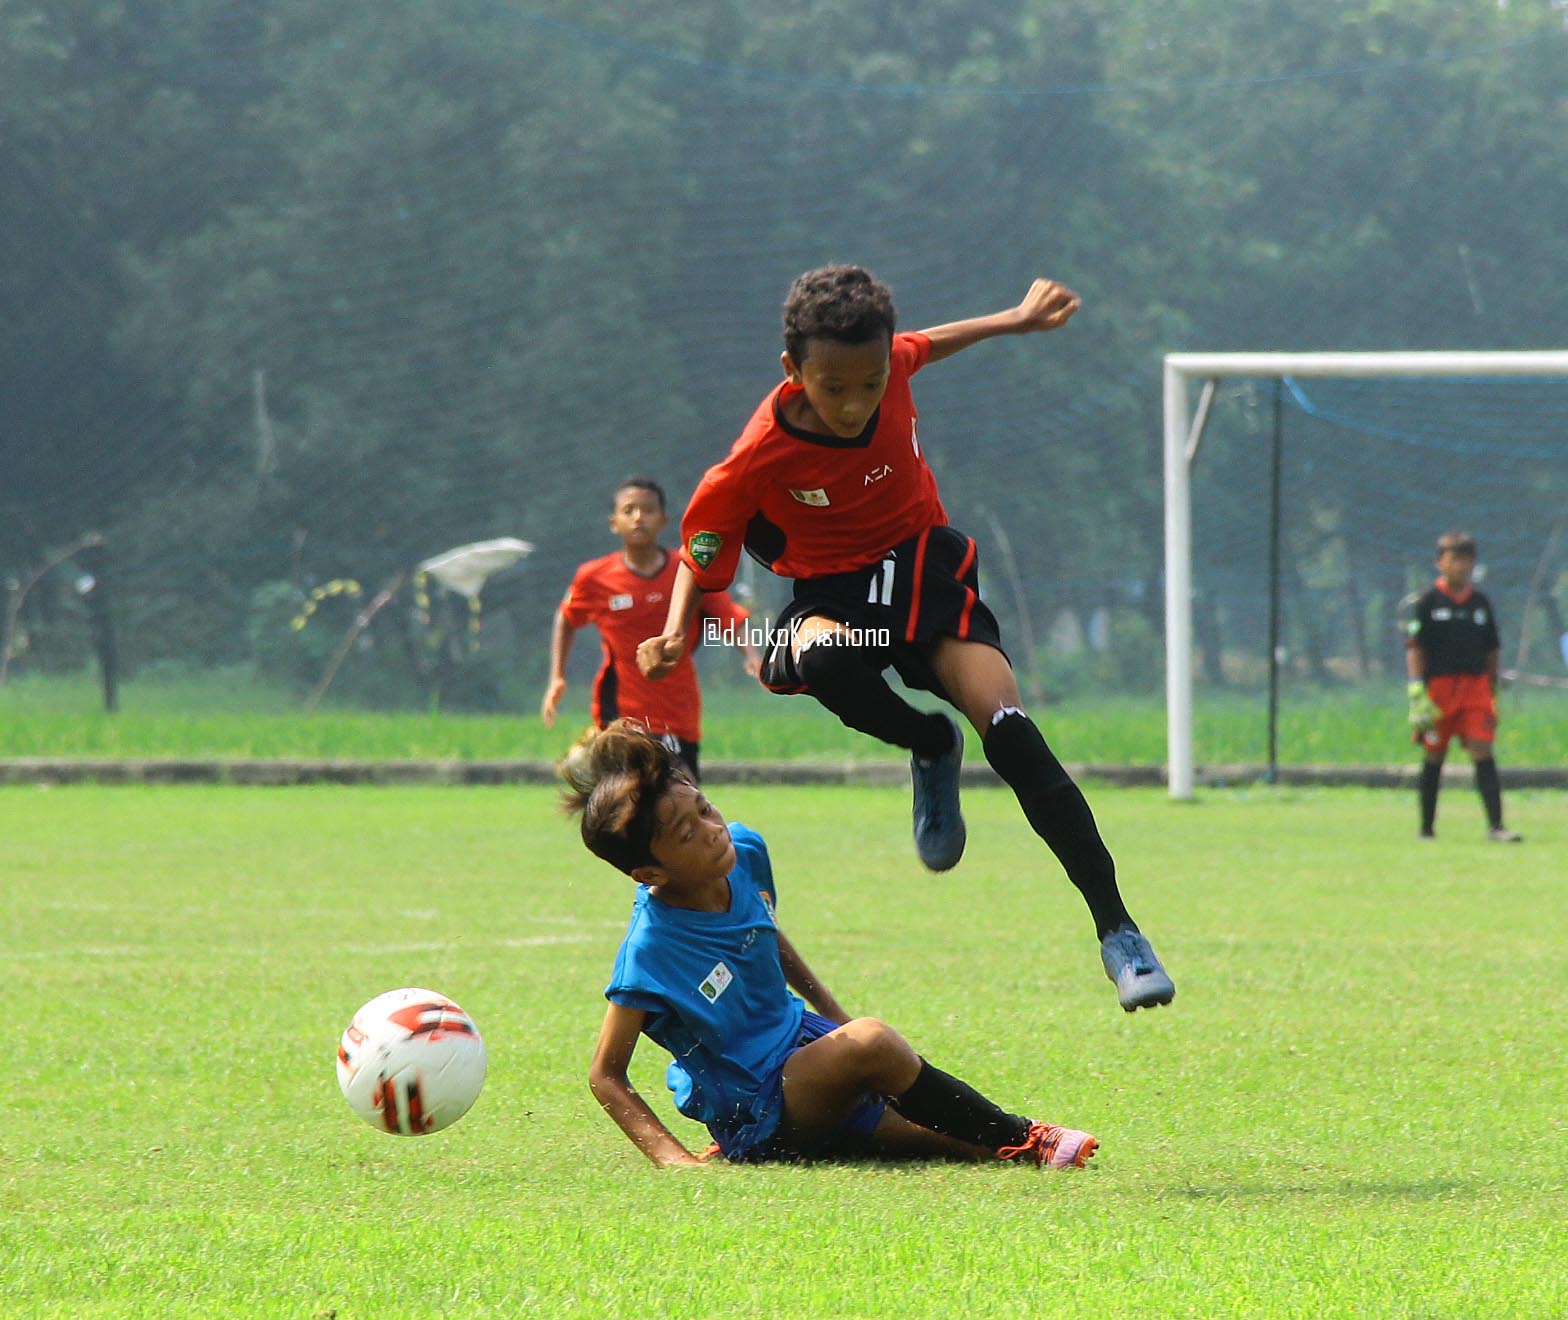 IMG 1668 - Kompetisi U-13 Pertama di Indonesia ada di Liga Persebaya